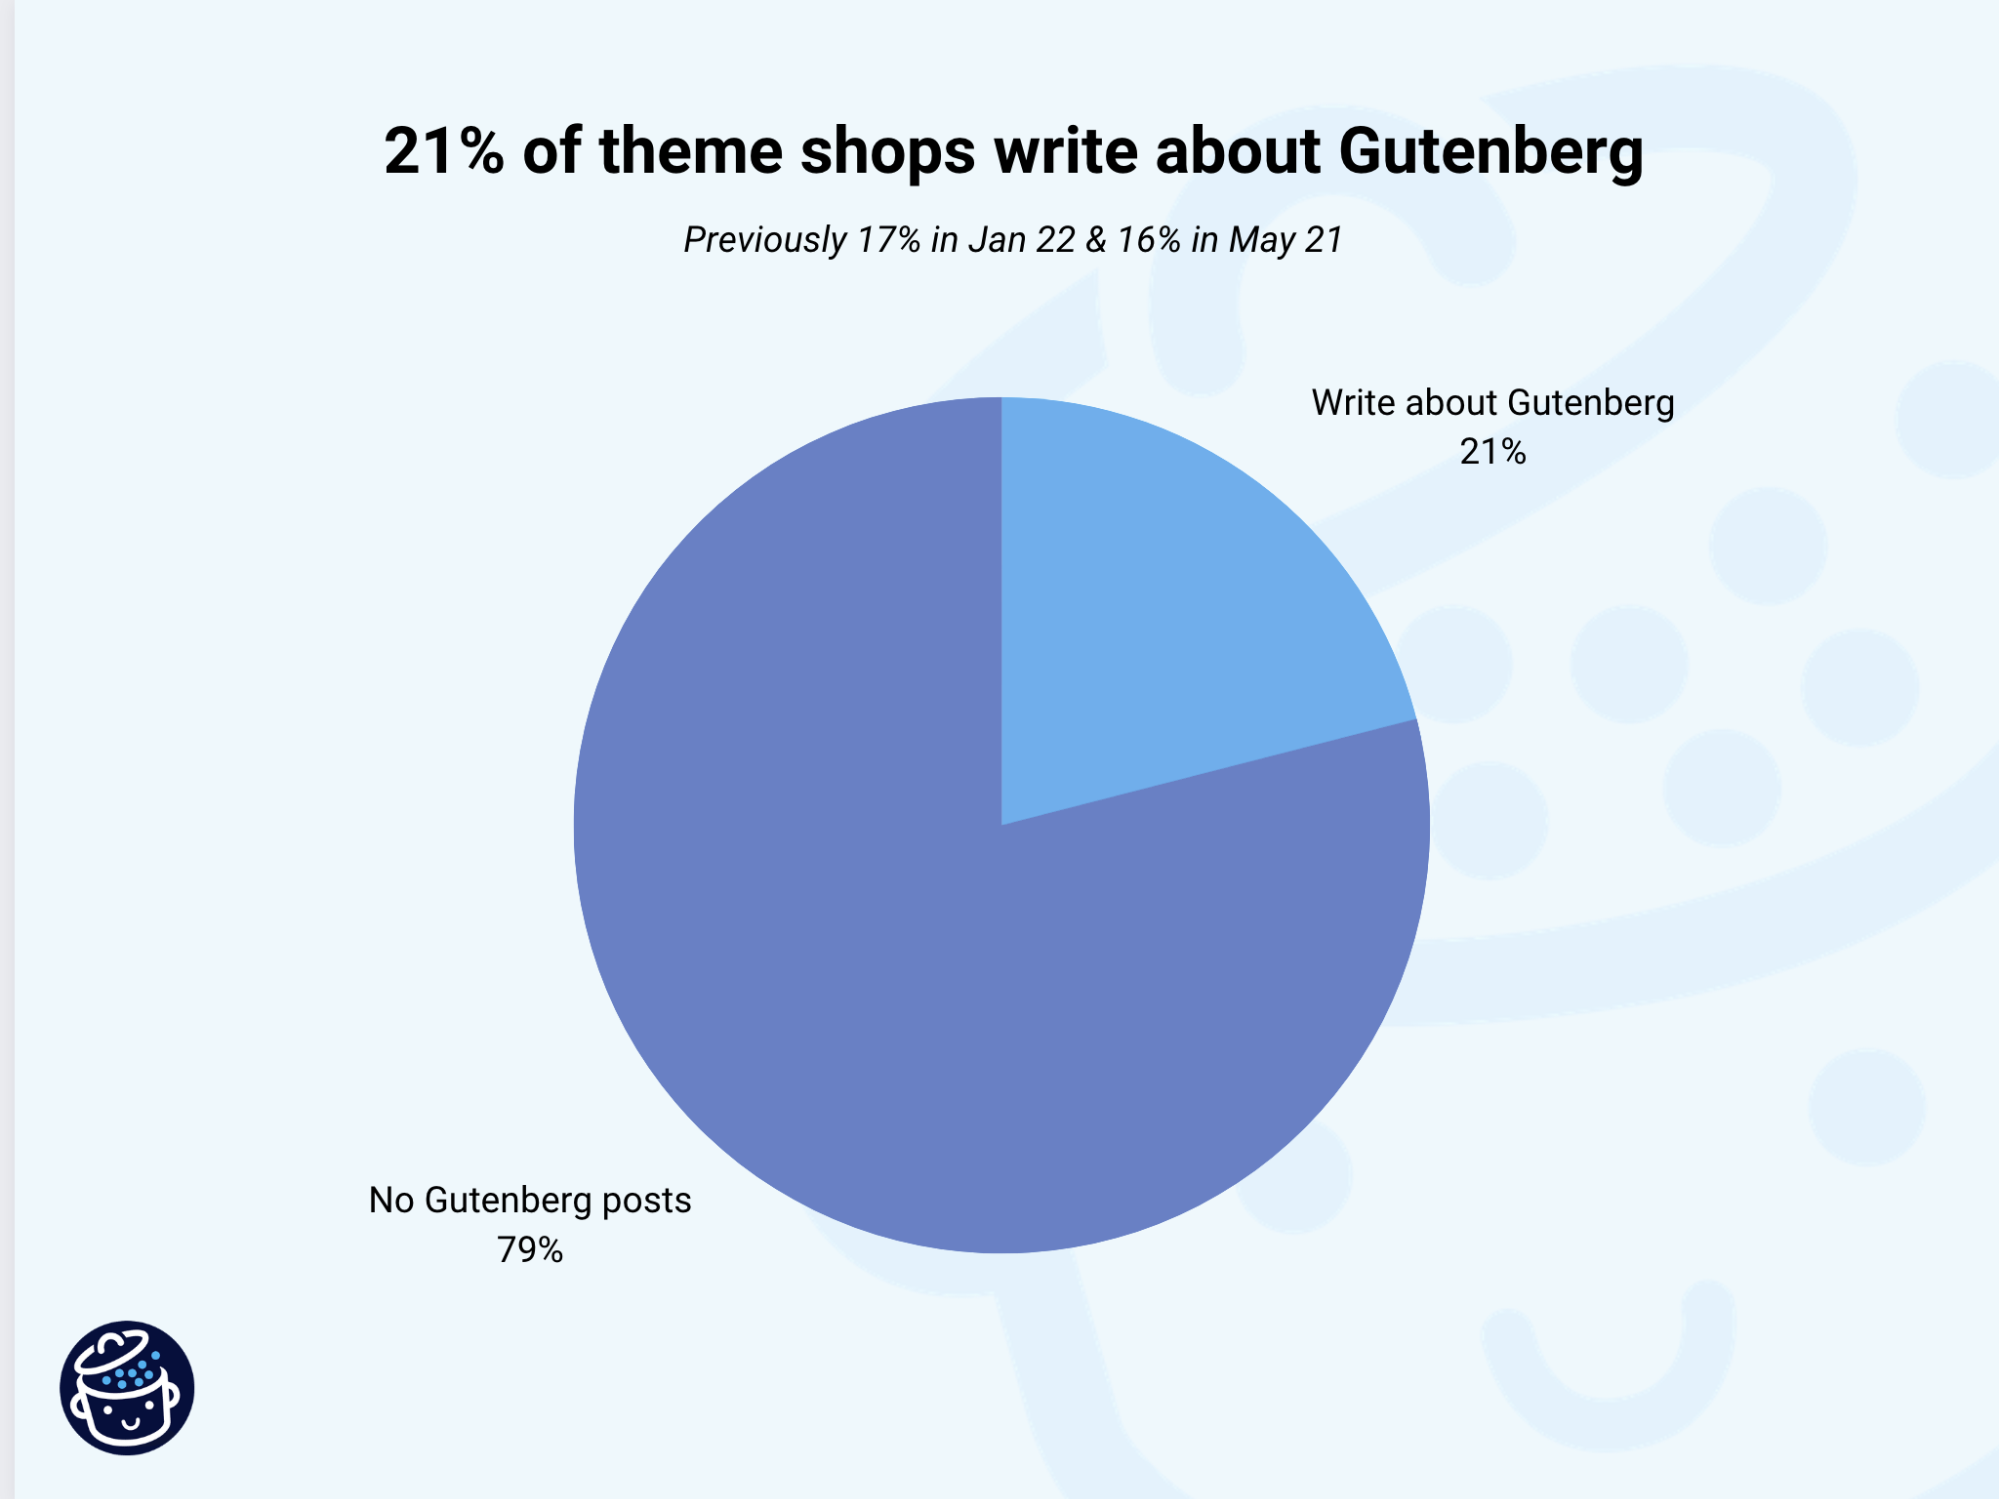 WordPress theme shops that write about Gutenberg.